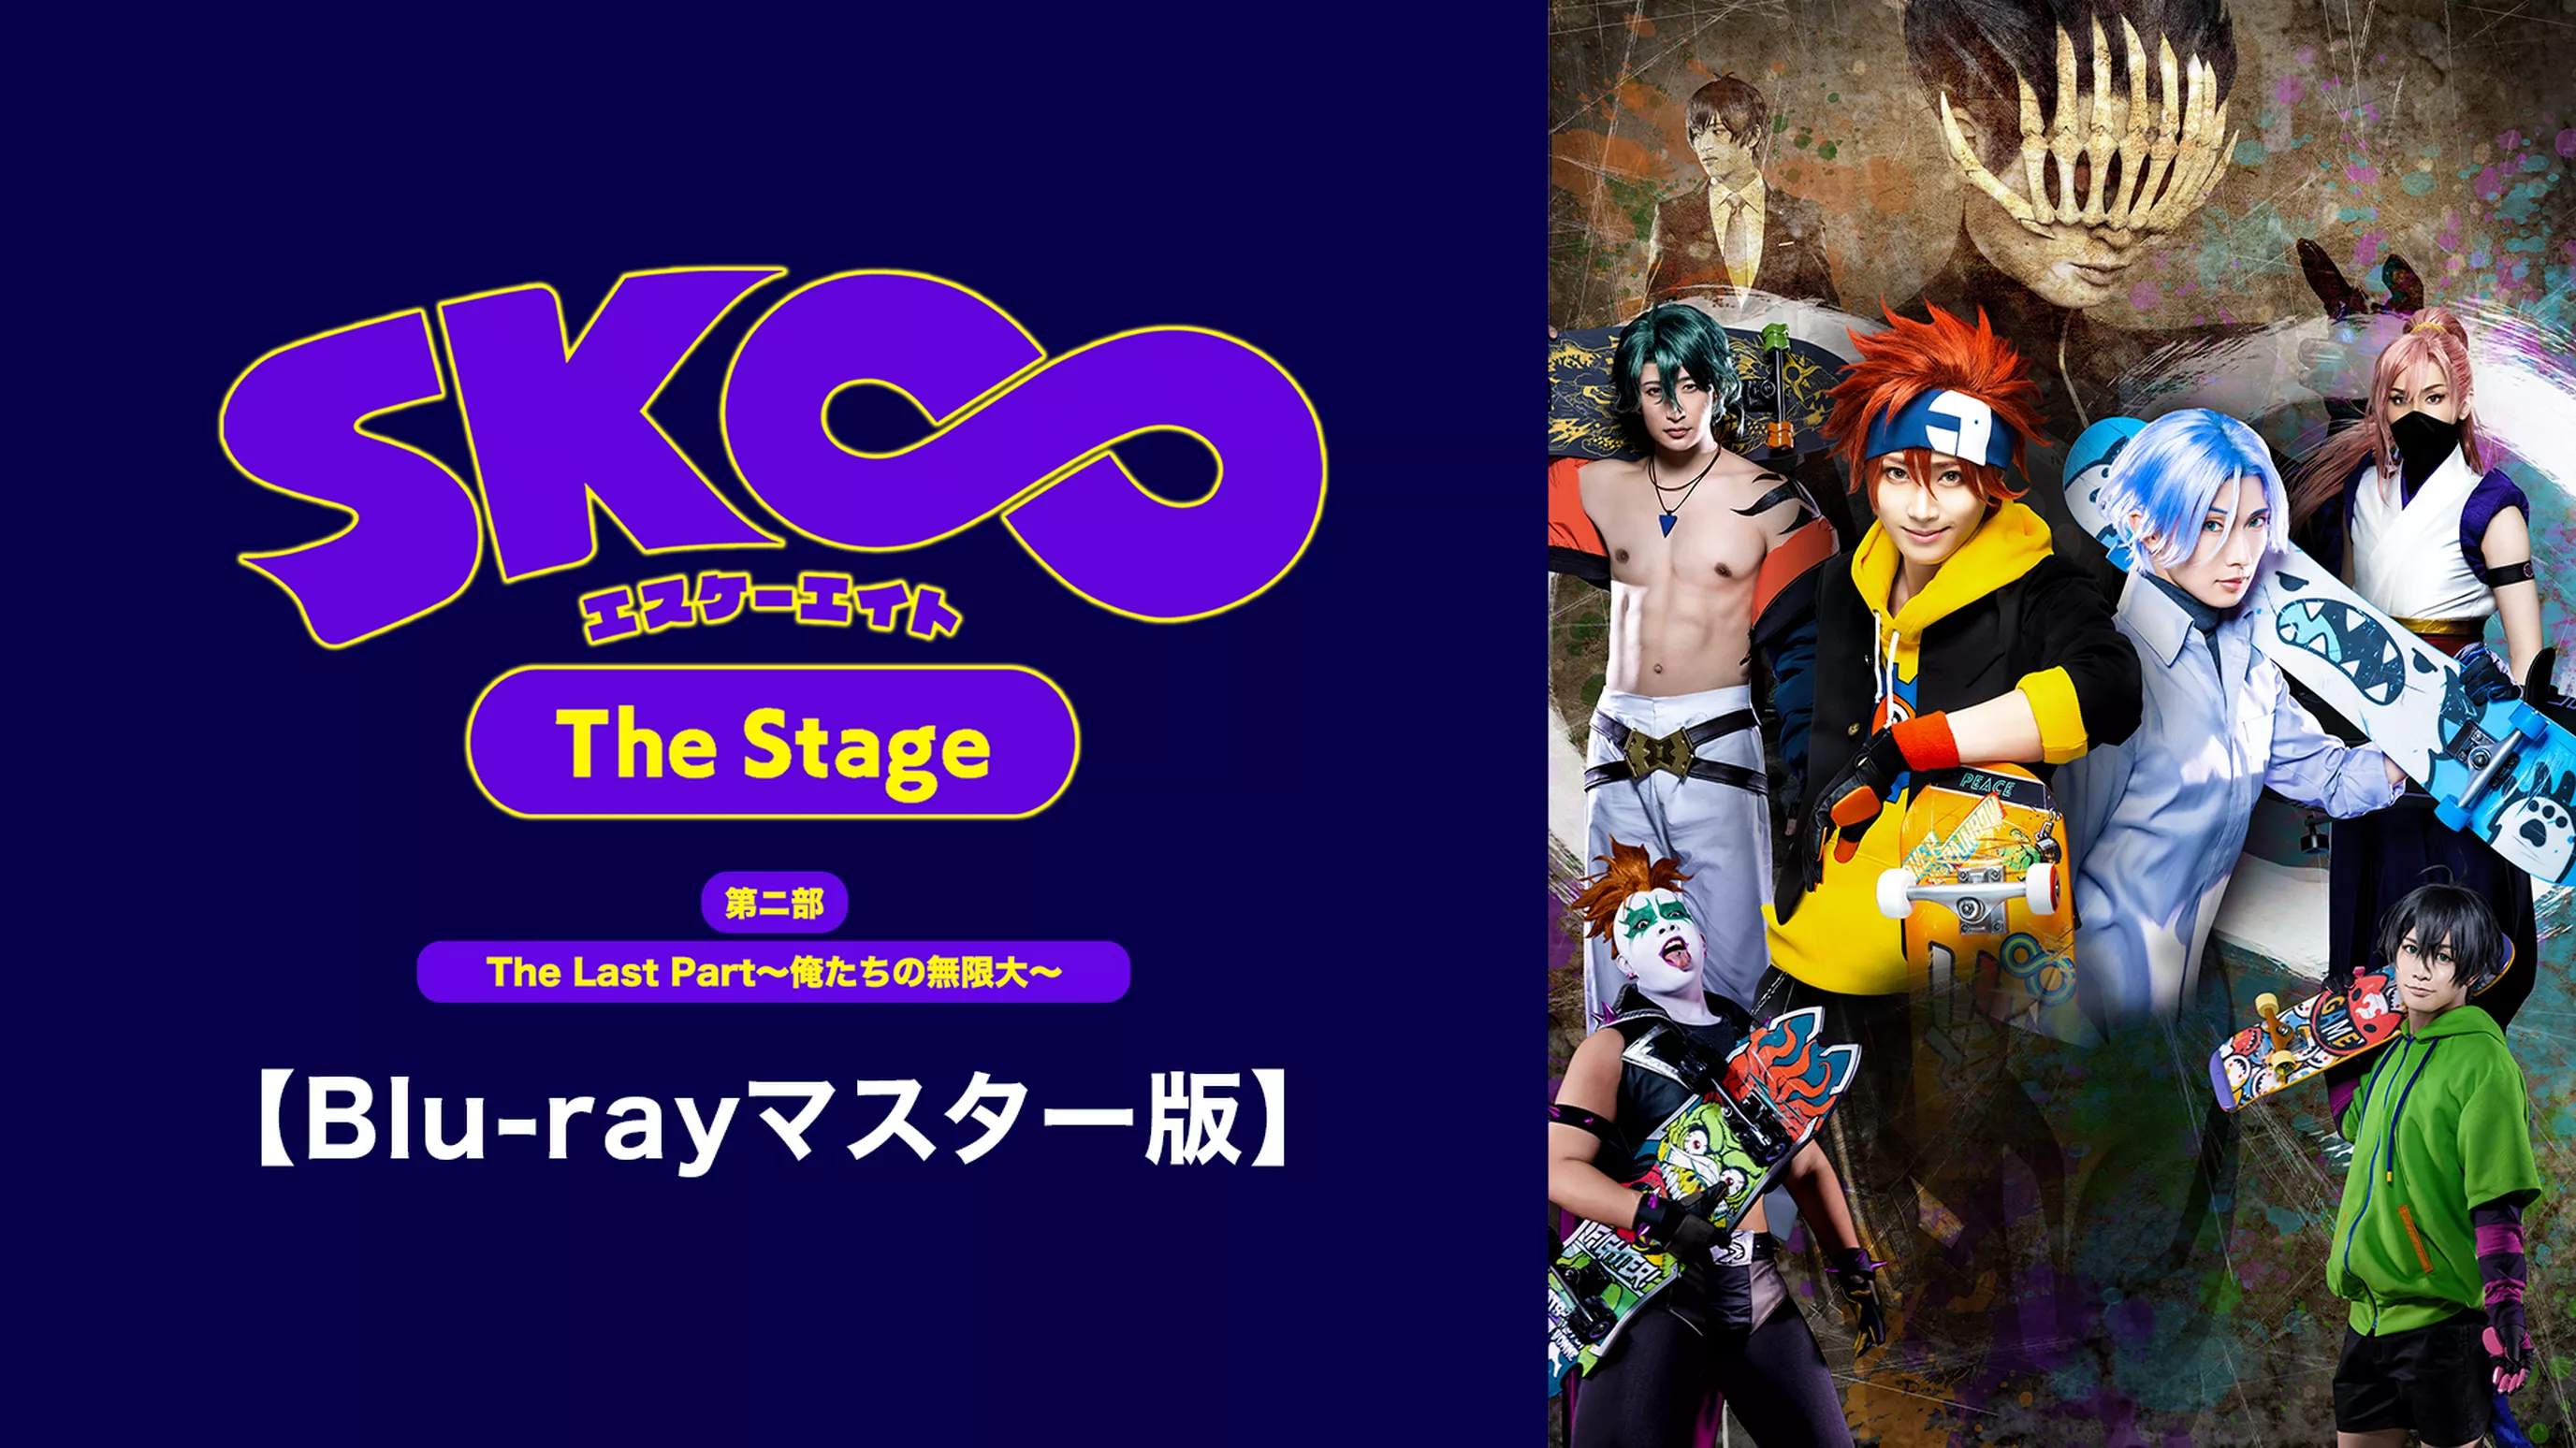 「SK∞ エスケーエイト The Stage」第二部 The Last Part～俺たちの無限大～【Blu-rayマスター版】